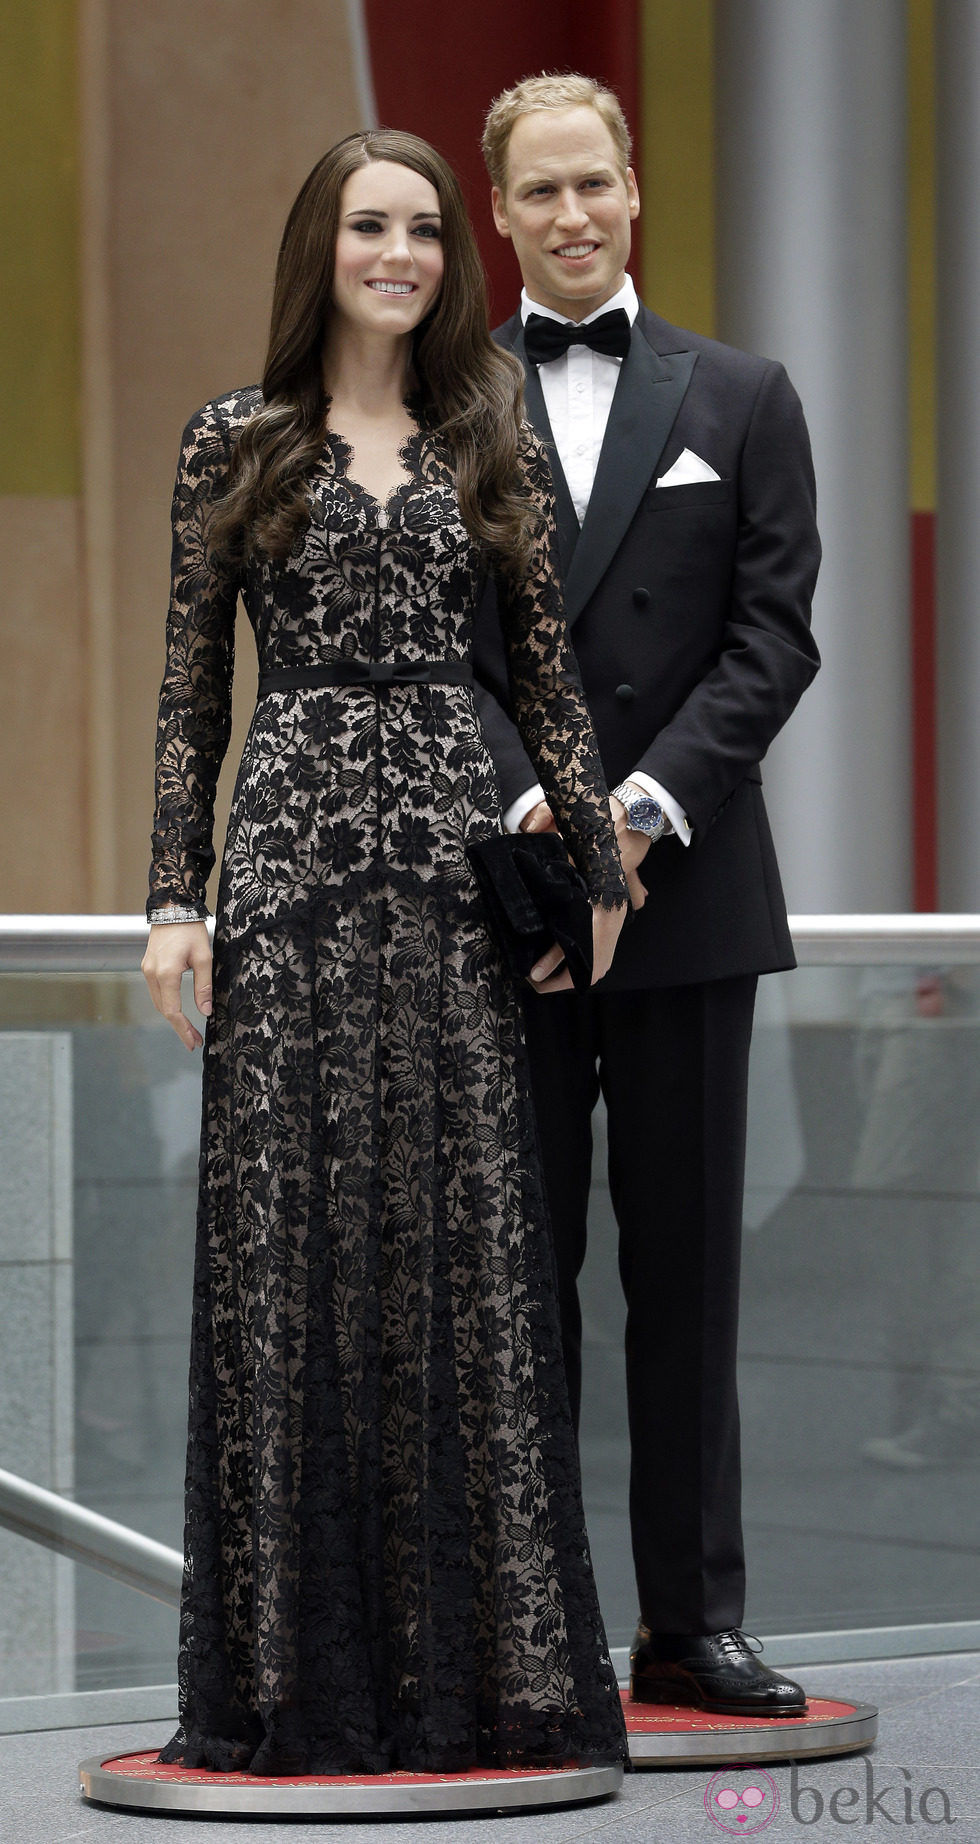 Figuras de cera del Príncipe Guillermo de Inglaterra y Kate Middleton